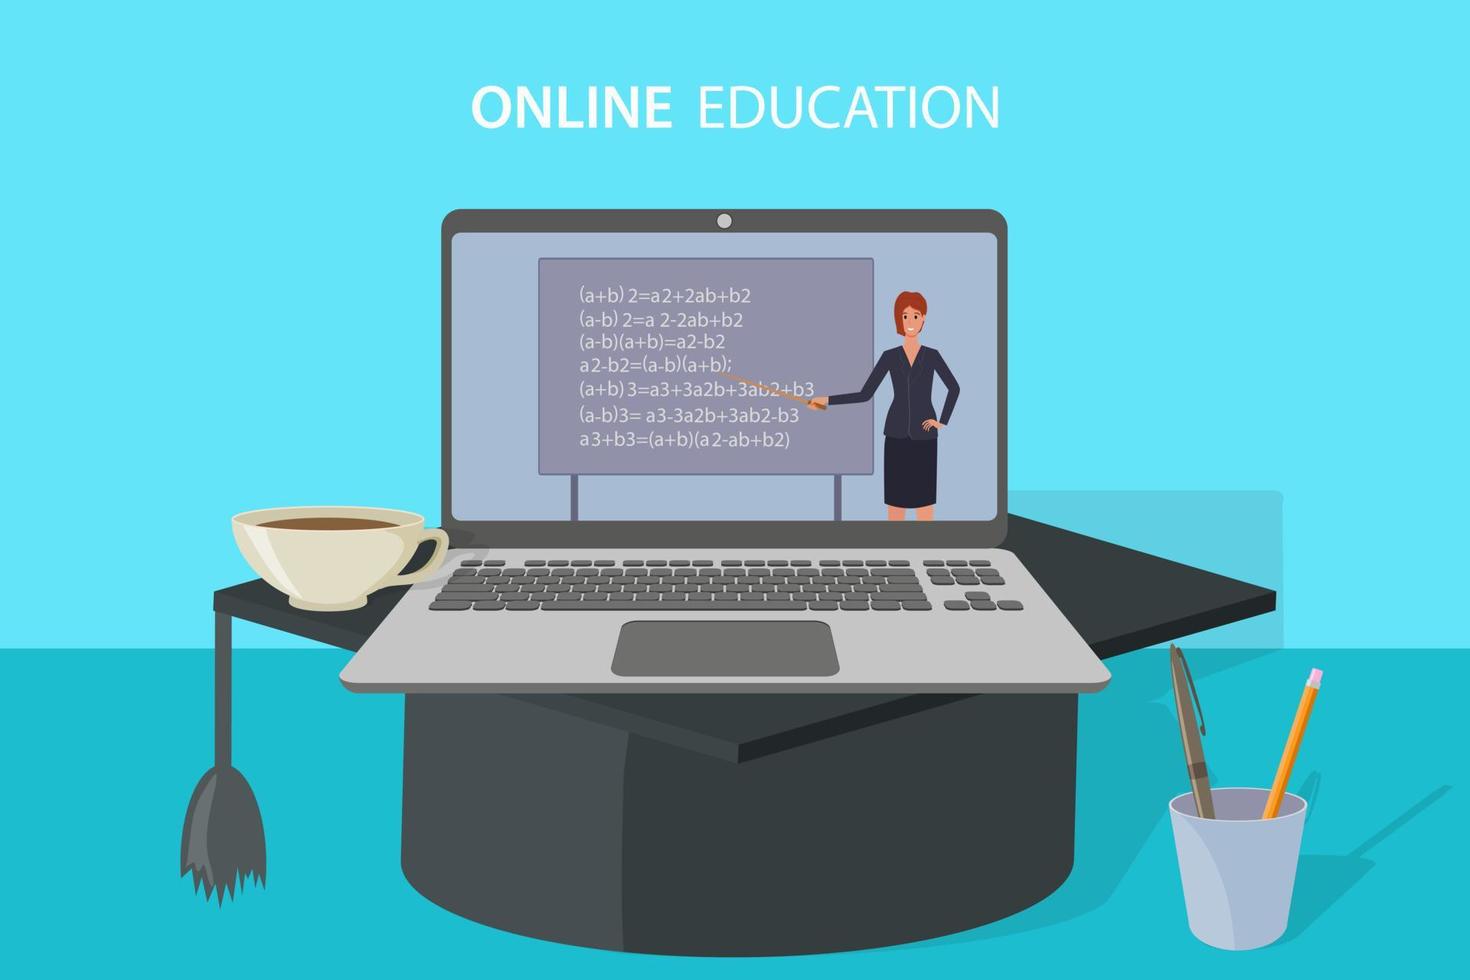 educación en línea, e-learning.el maestro lleva a cabo la lección en una pantalla de computadora portátil con un límite académico.educación en el hogar, aprendizaje a distancia y aprobación de exámenes.cursos en línea y capacitación avanzada. vector